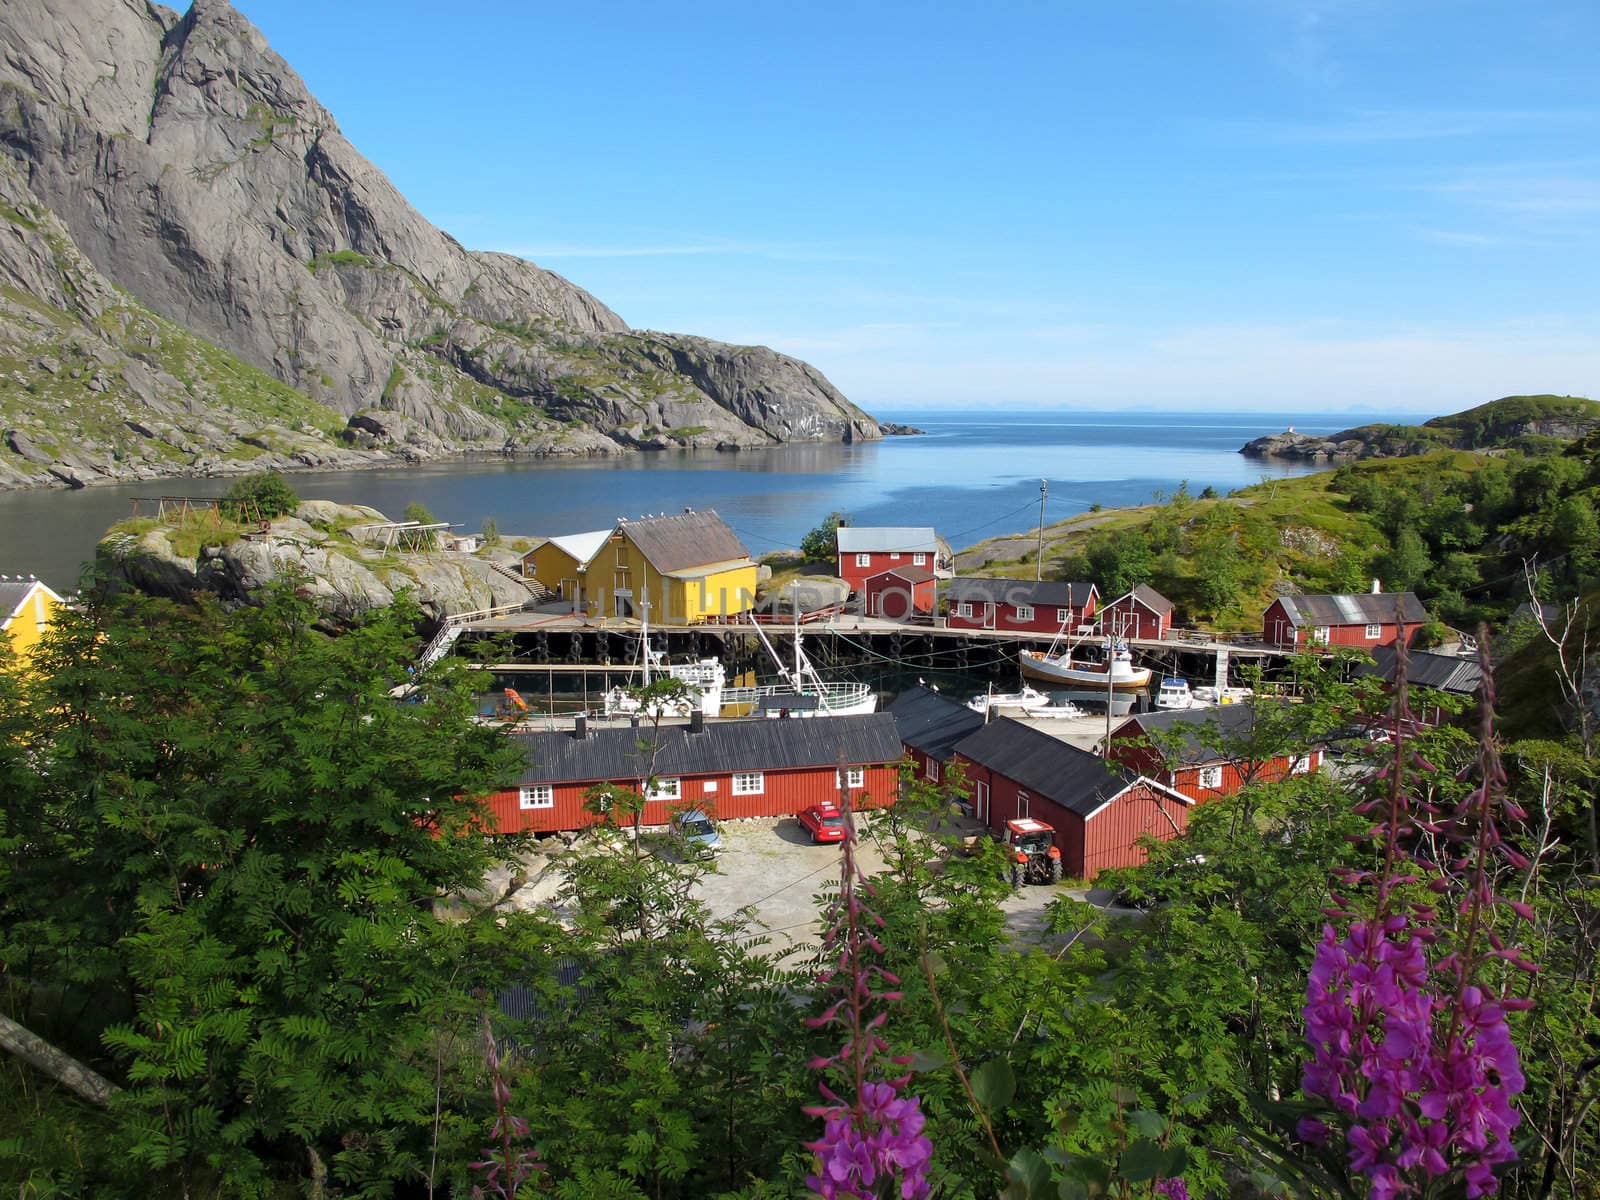 Picturesque landscape at Norway village
